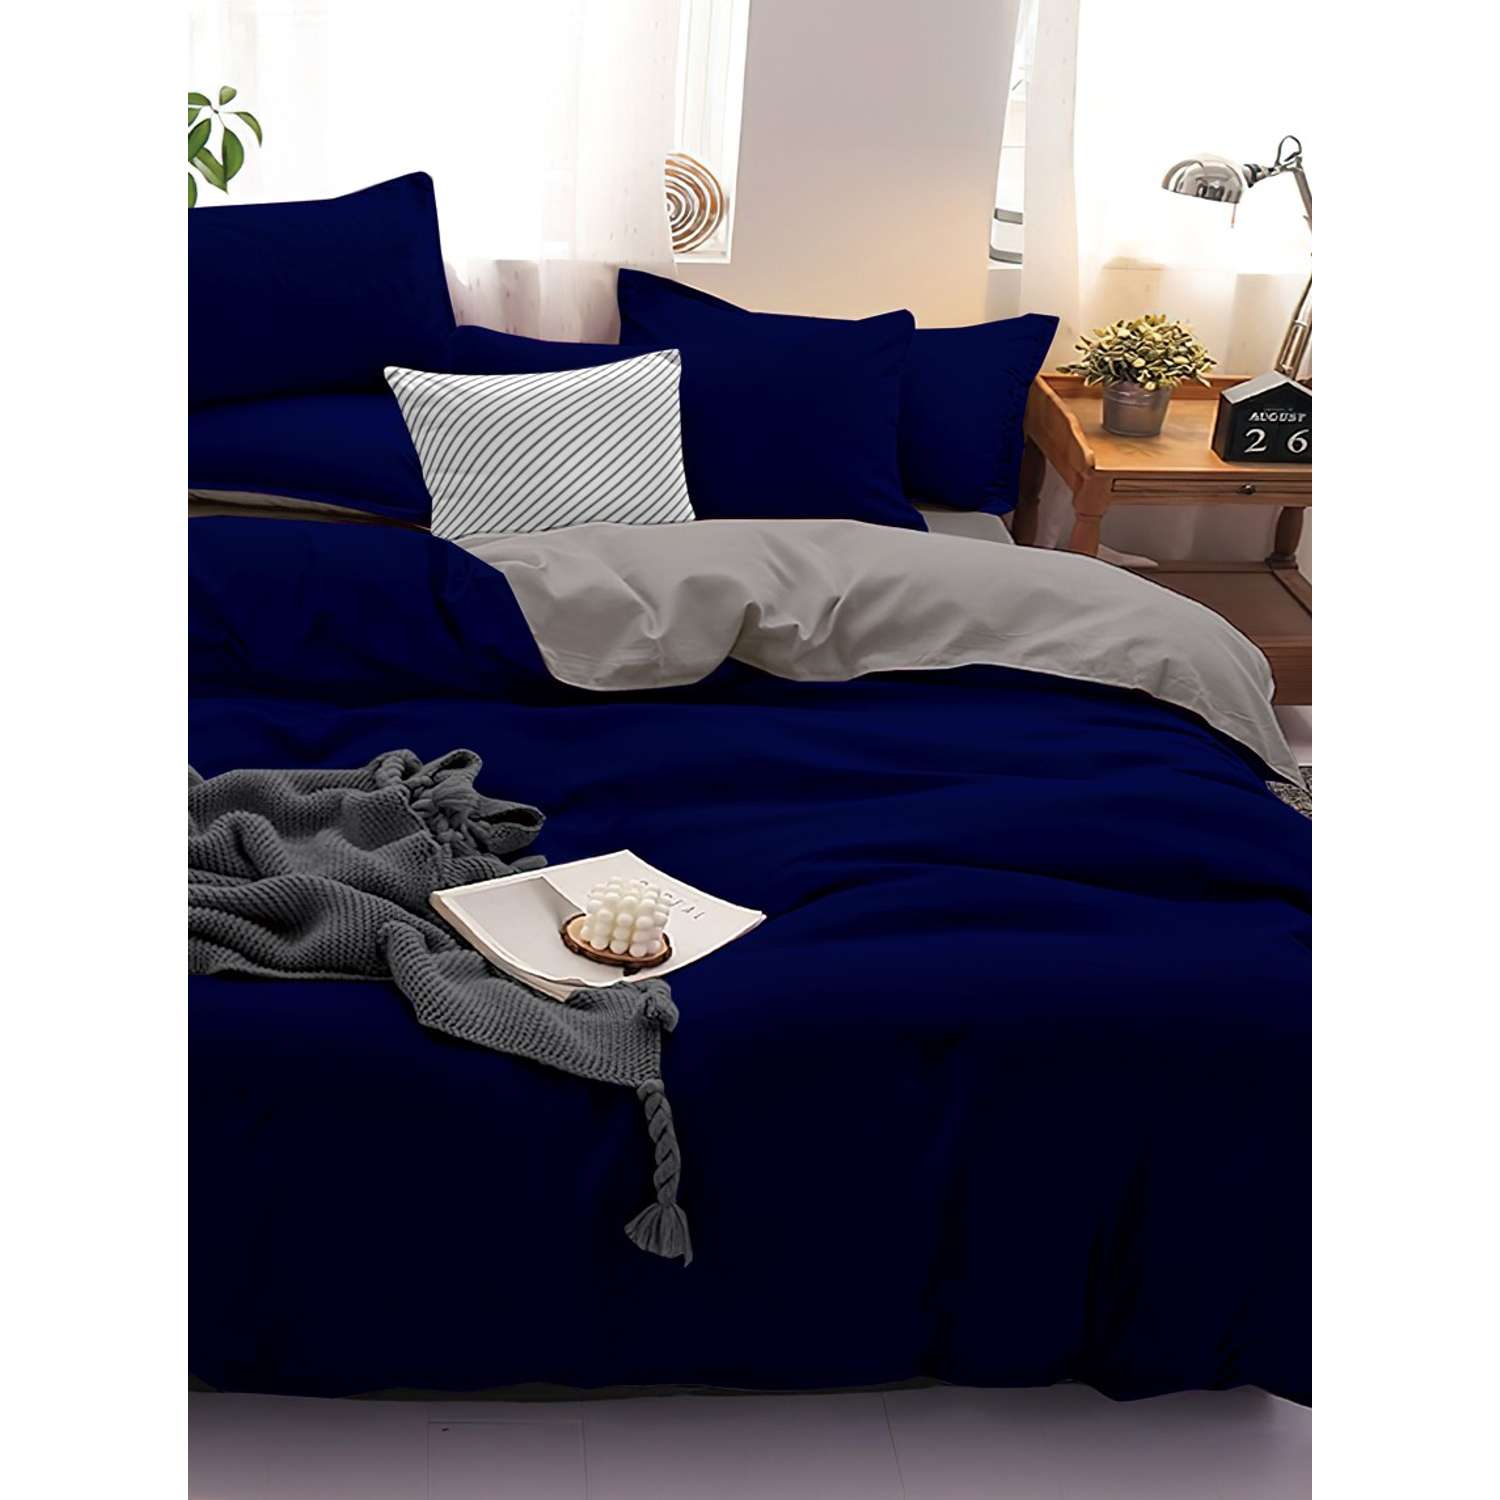 Комплект постельного белья PAVLine Манетти полисатин 1.5 сп. темно-синий/серый S32 - фото 1